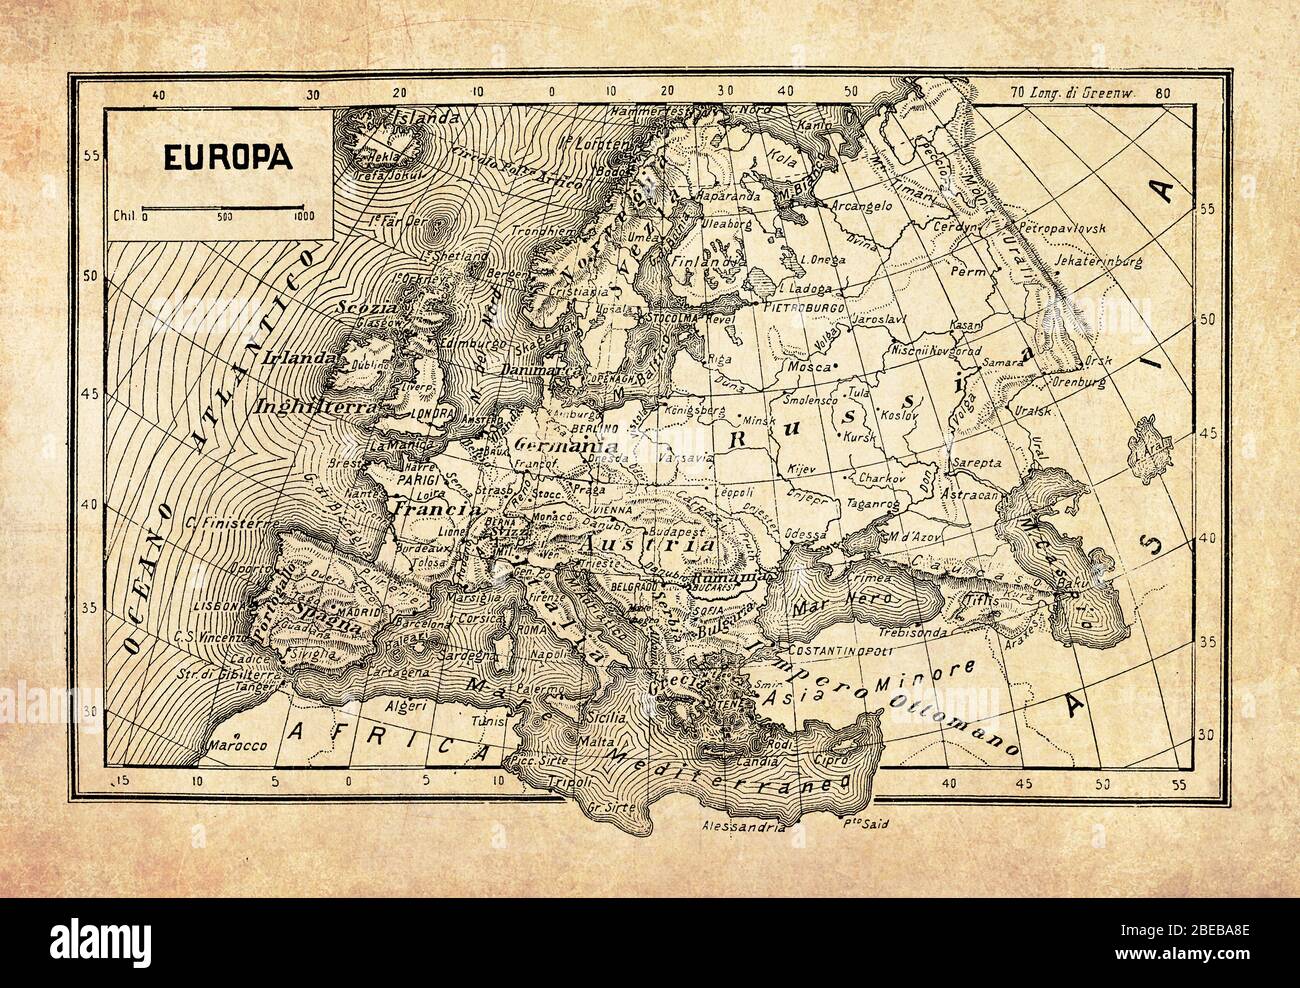 Alte Karte von Europa Kontinent und Länder, die im Norden vom Arktischen Ozean, dem Atlantischen Ozean und dem Mittelmeer mit geografischen italienischen Namen und Beschreibungen begrenzt sind Stockfoto